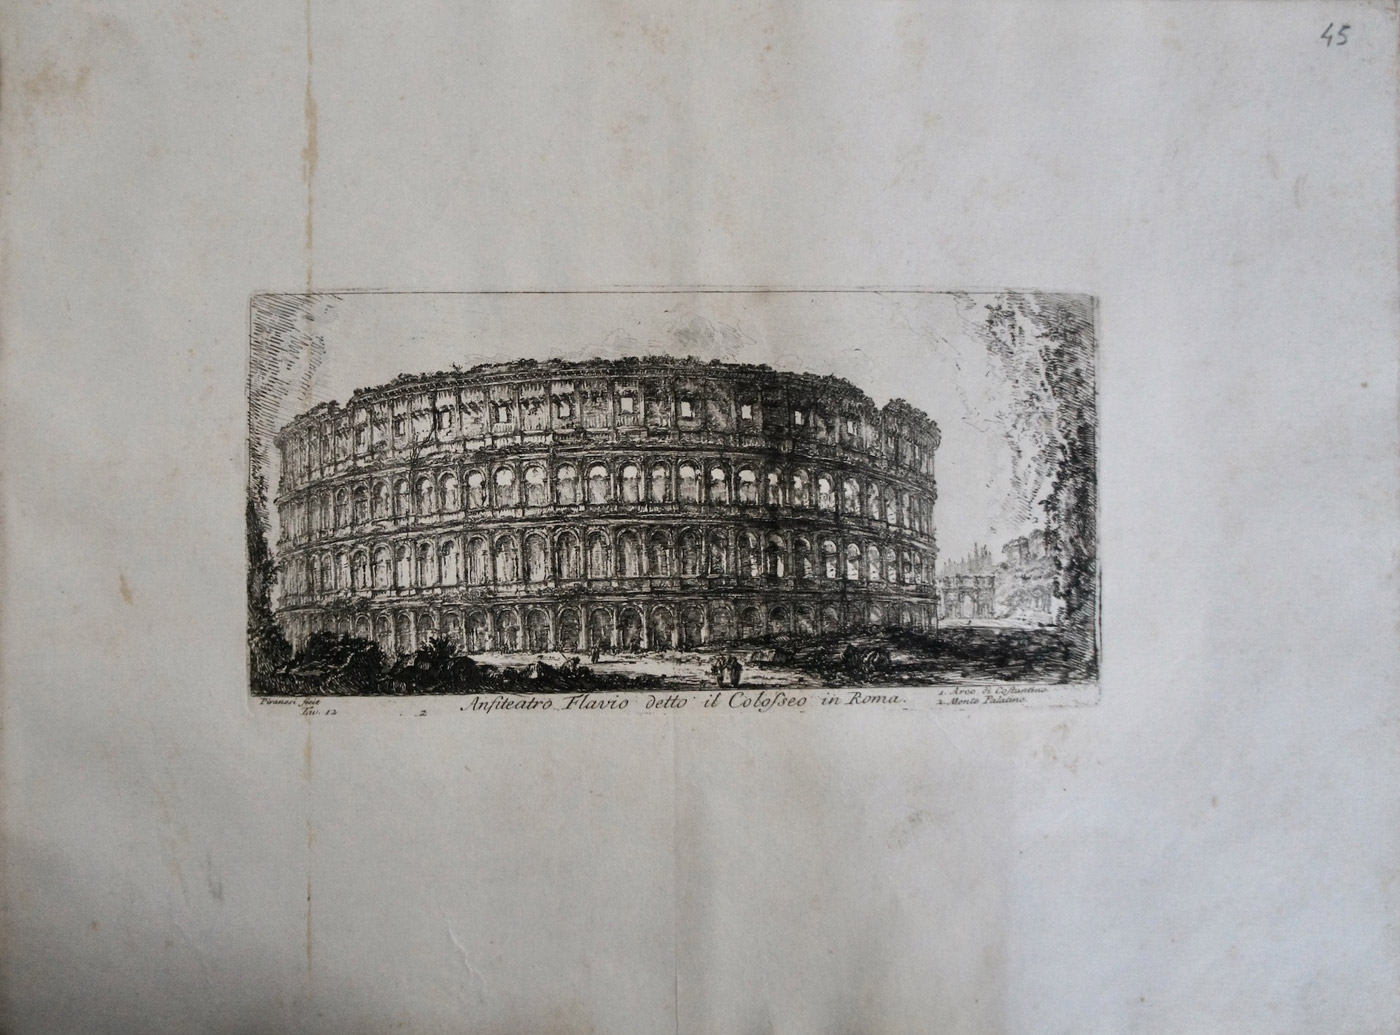 Le Antichità Romane stampa Colosseo